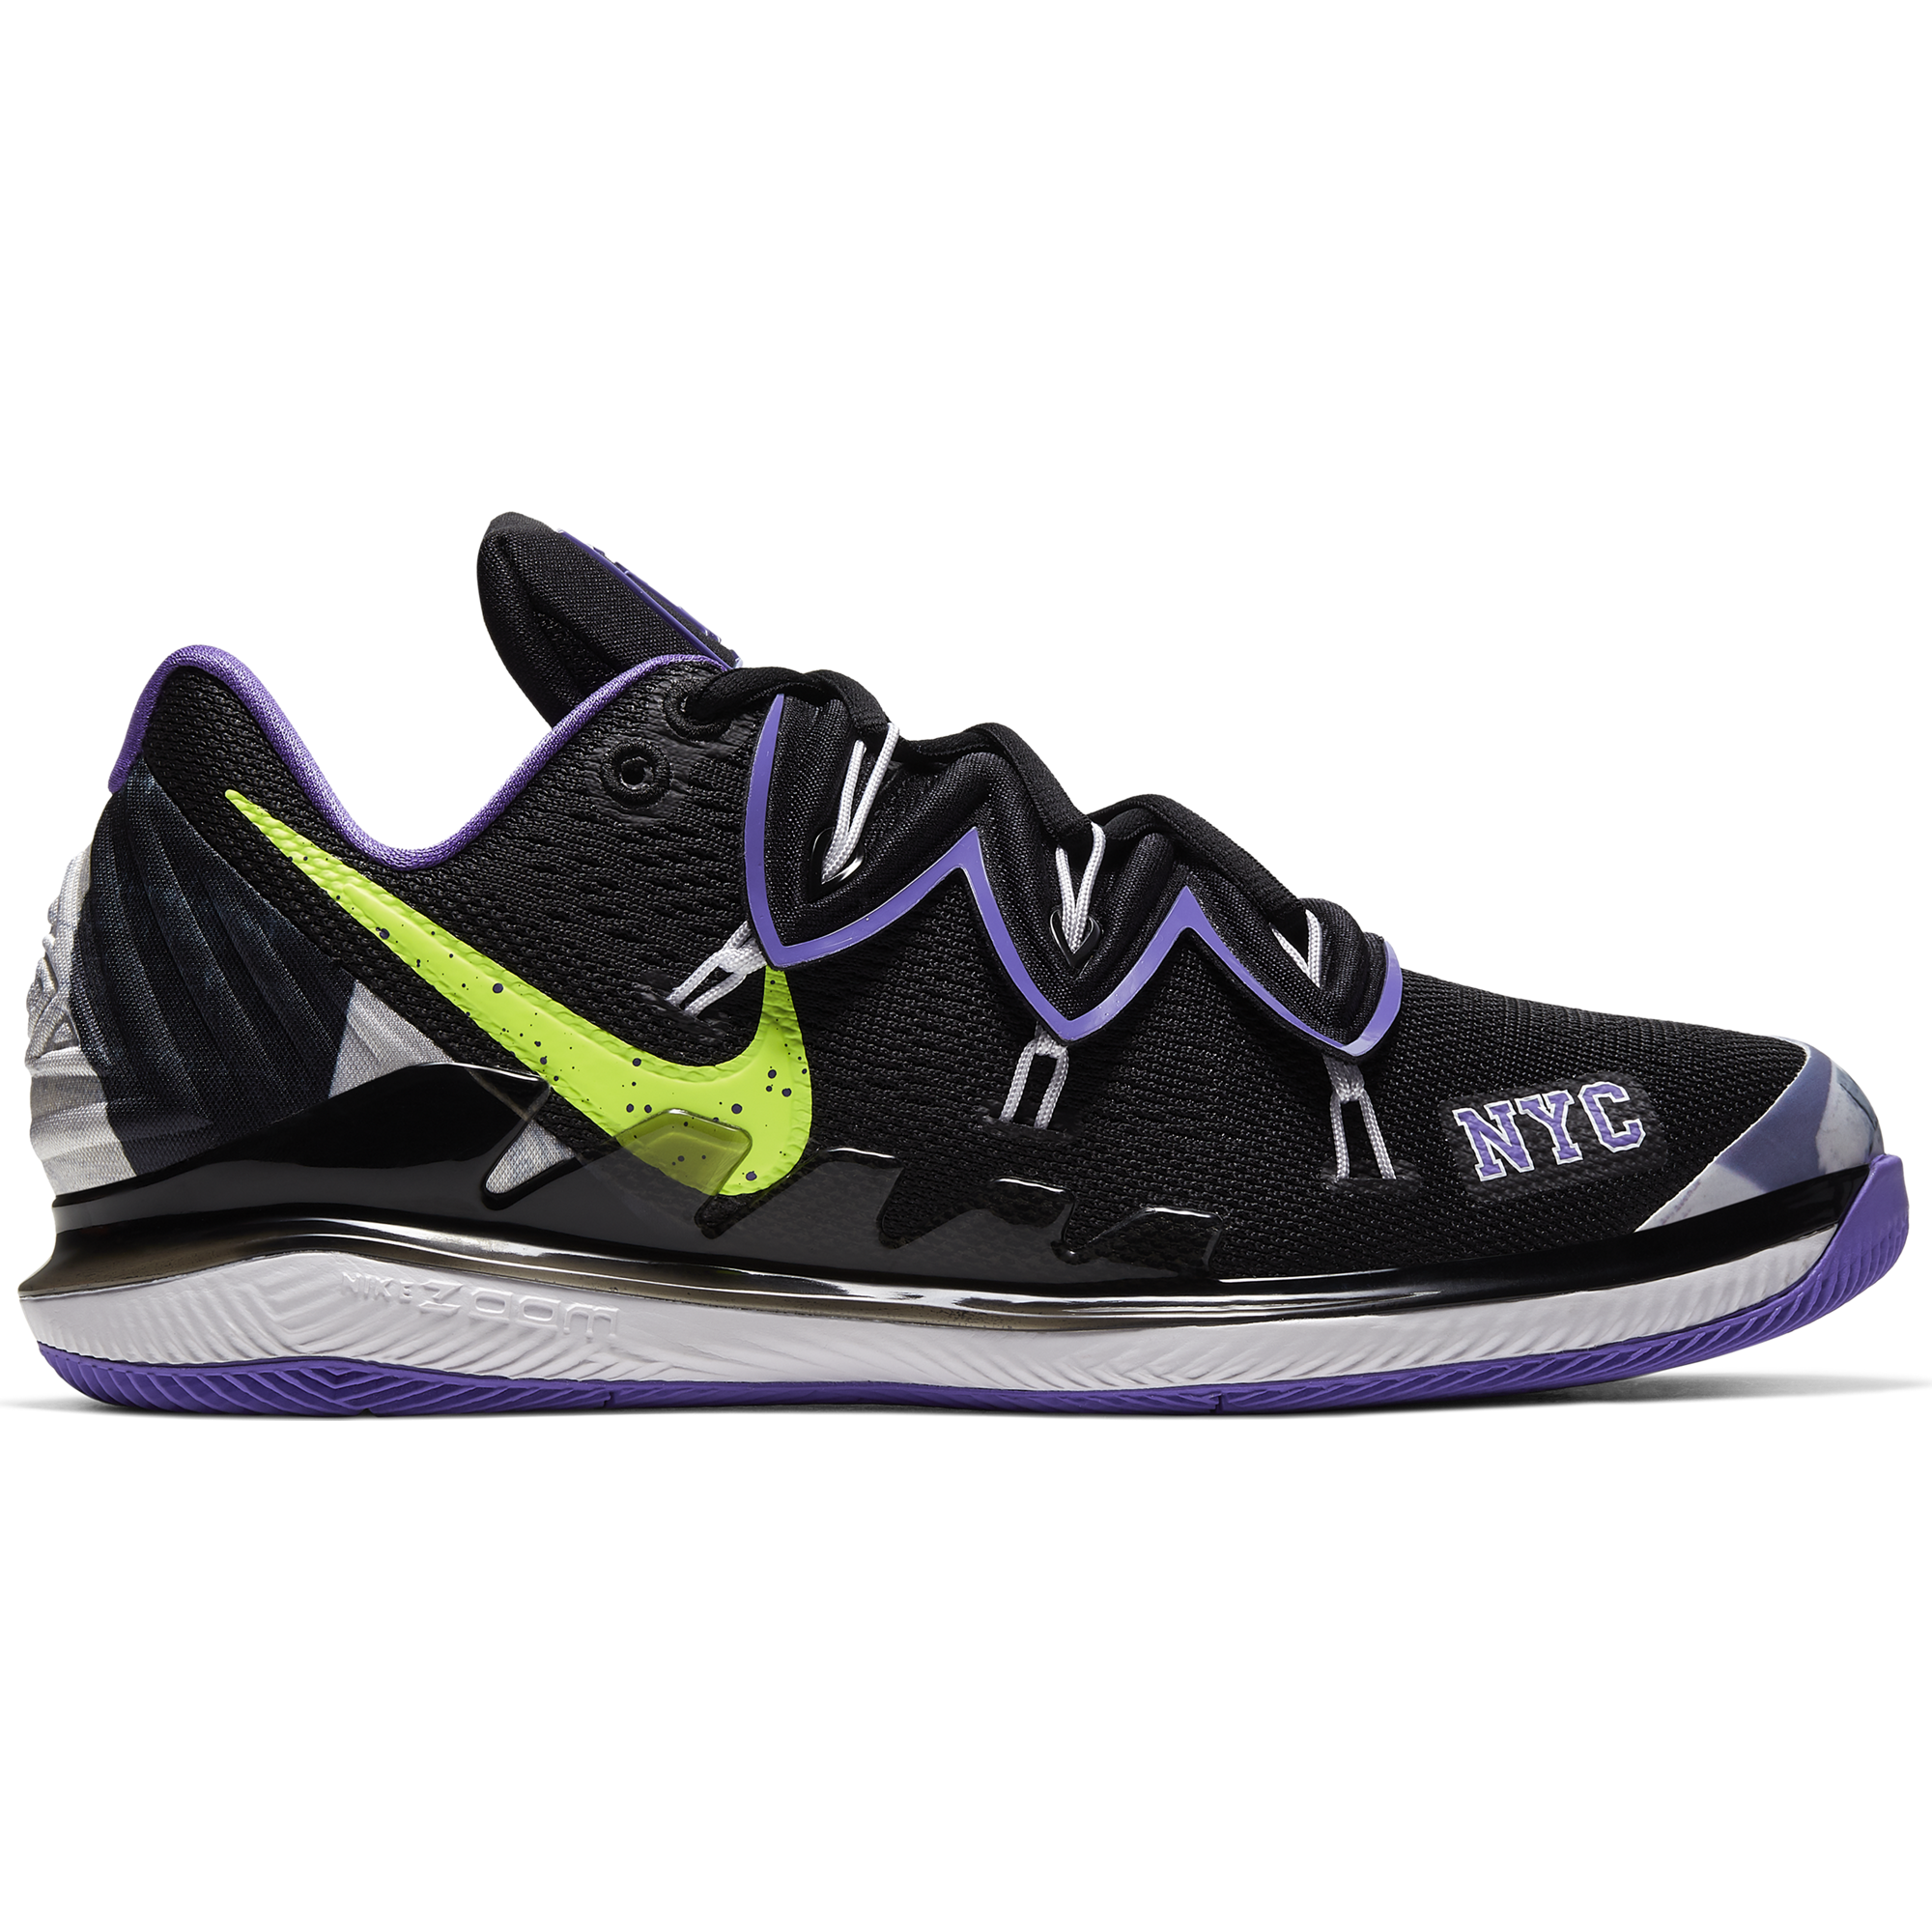 Air Zoom Vapor X Kyrie 5 Men's Hard Court Tennis Shoe - Black/Purple